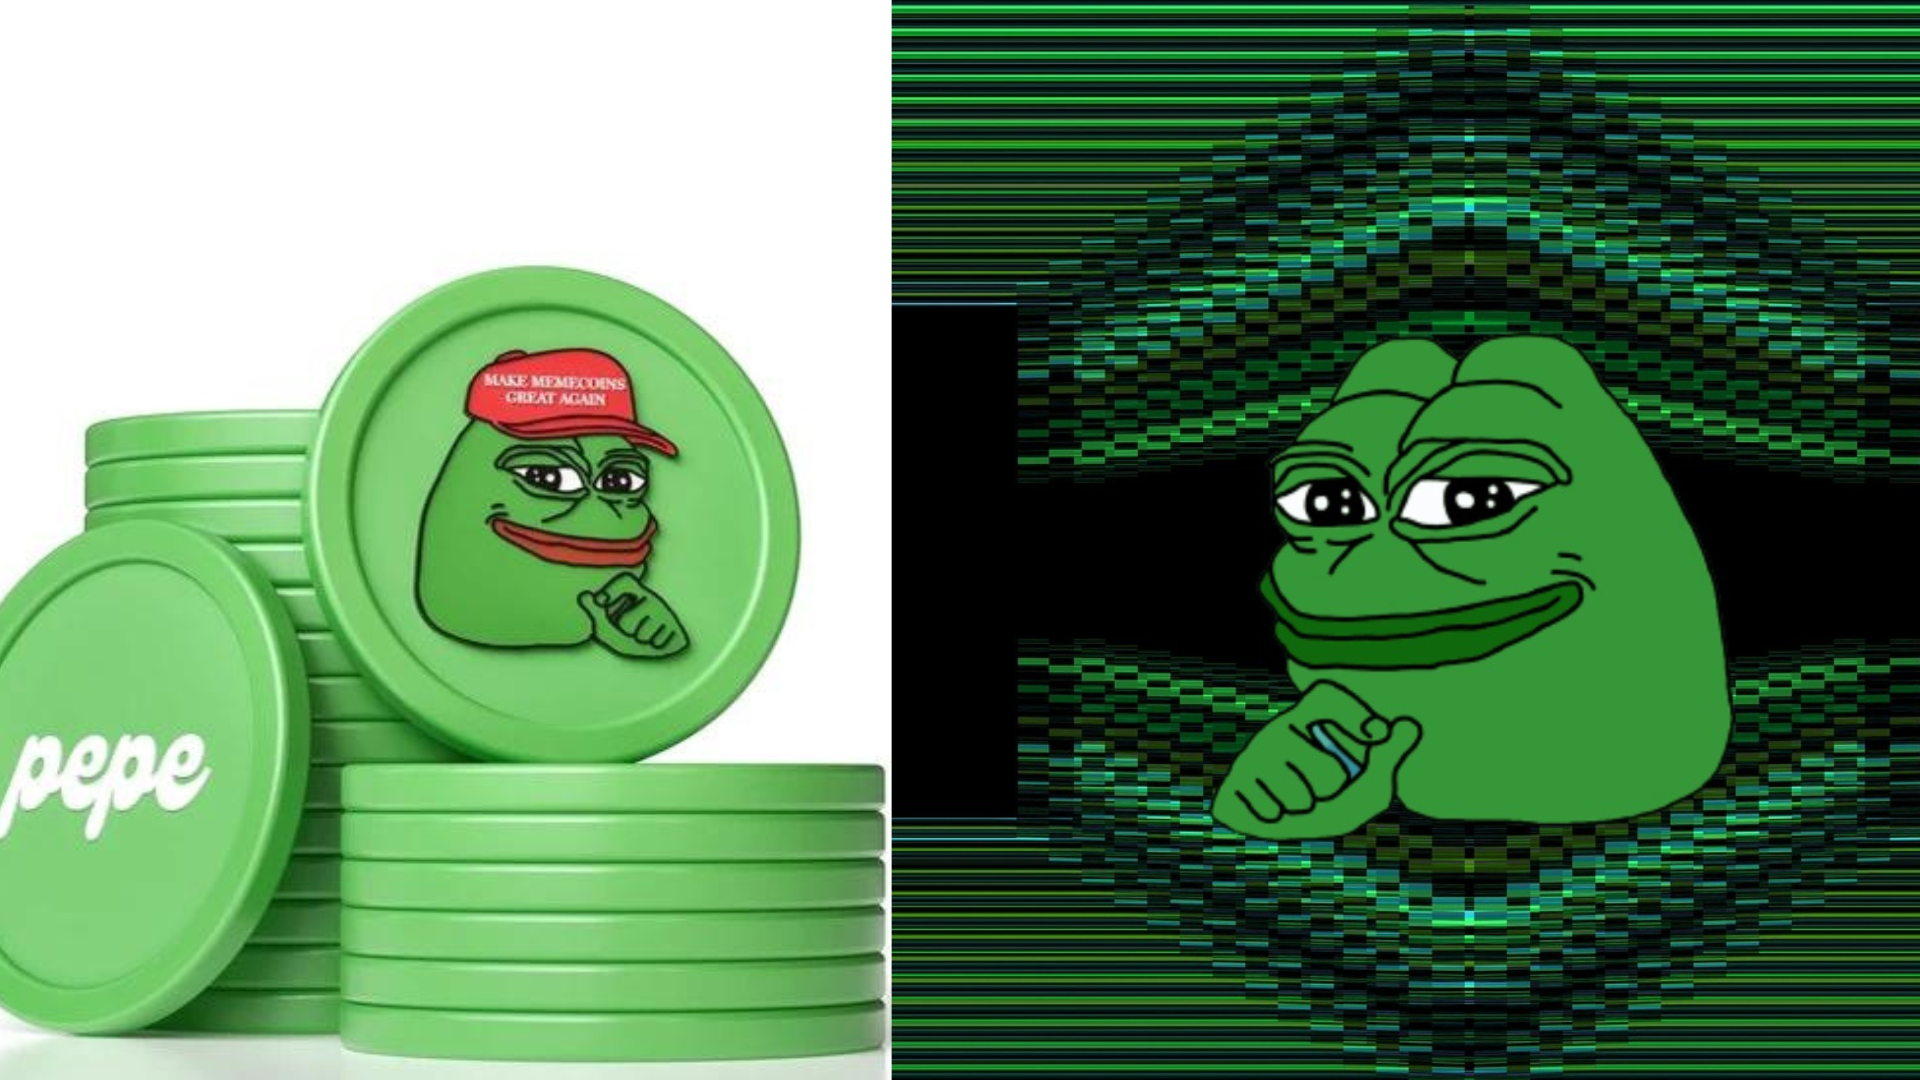 một AI được tạo ra từ một số đồng xu màu xanh lá cây có logo "Ếch Pepe" trên đó, như một tấm áp phích chính "hướng dẫn mua hàng" ngụ ý